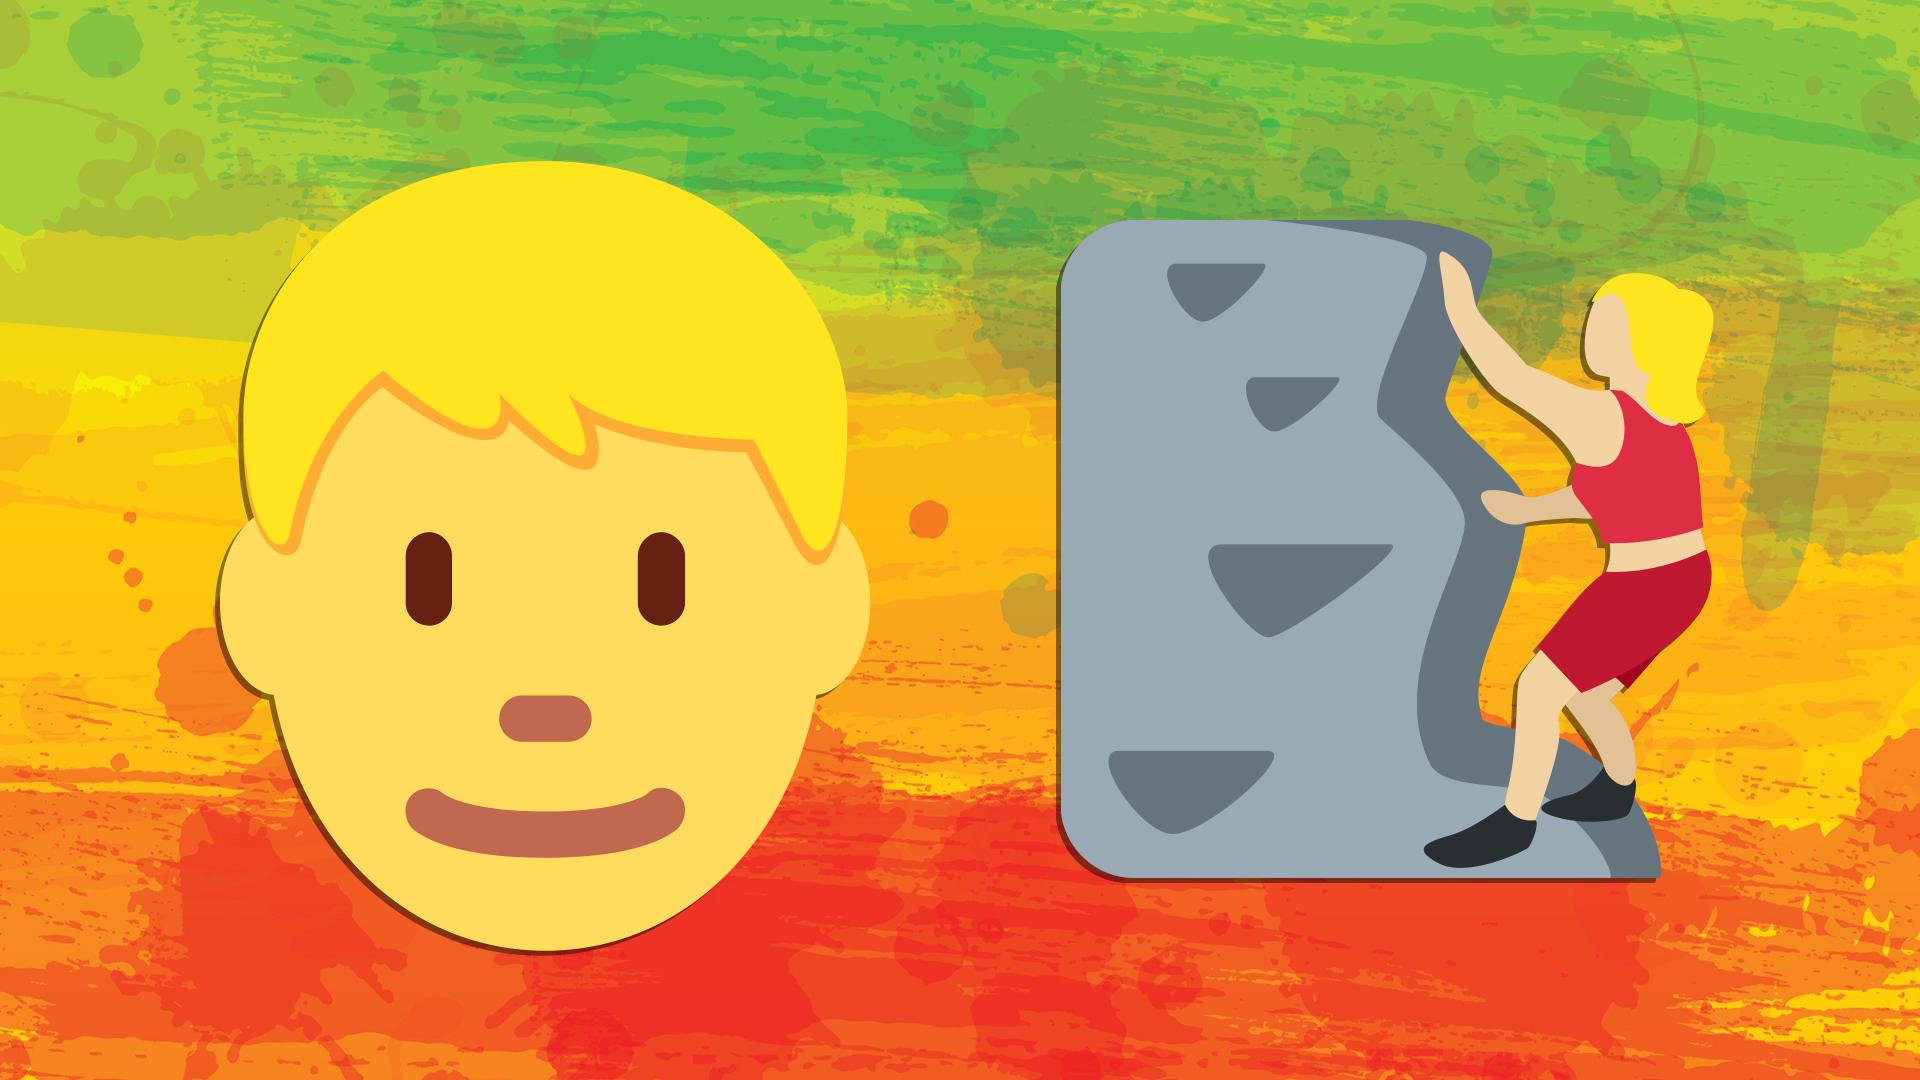 A face emoji and a rock climbing emoji